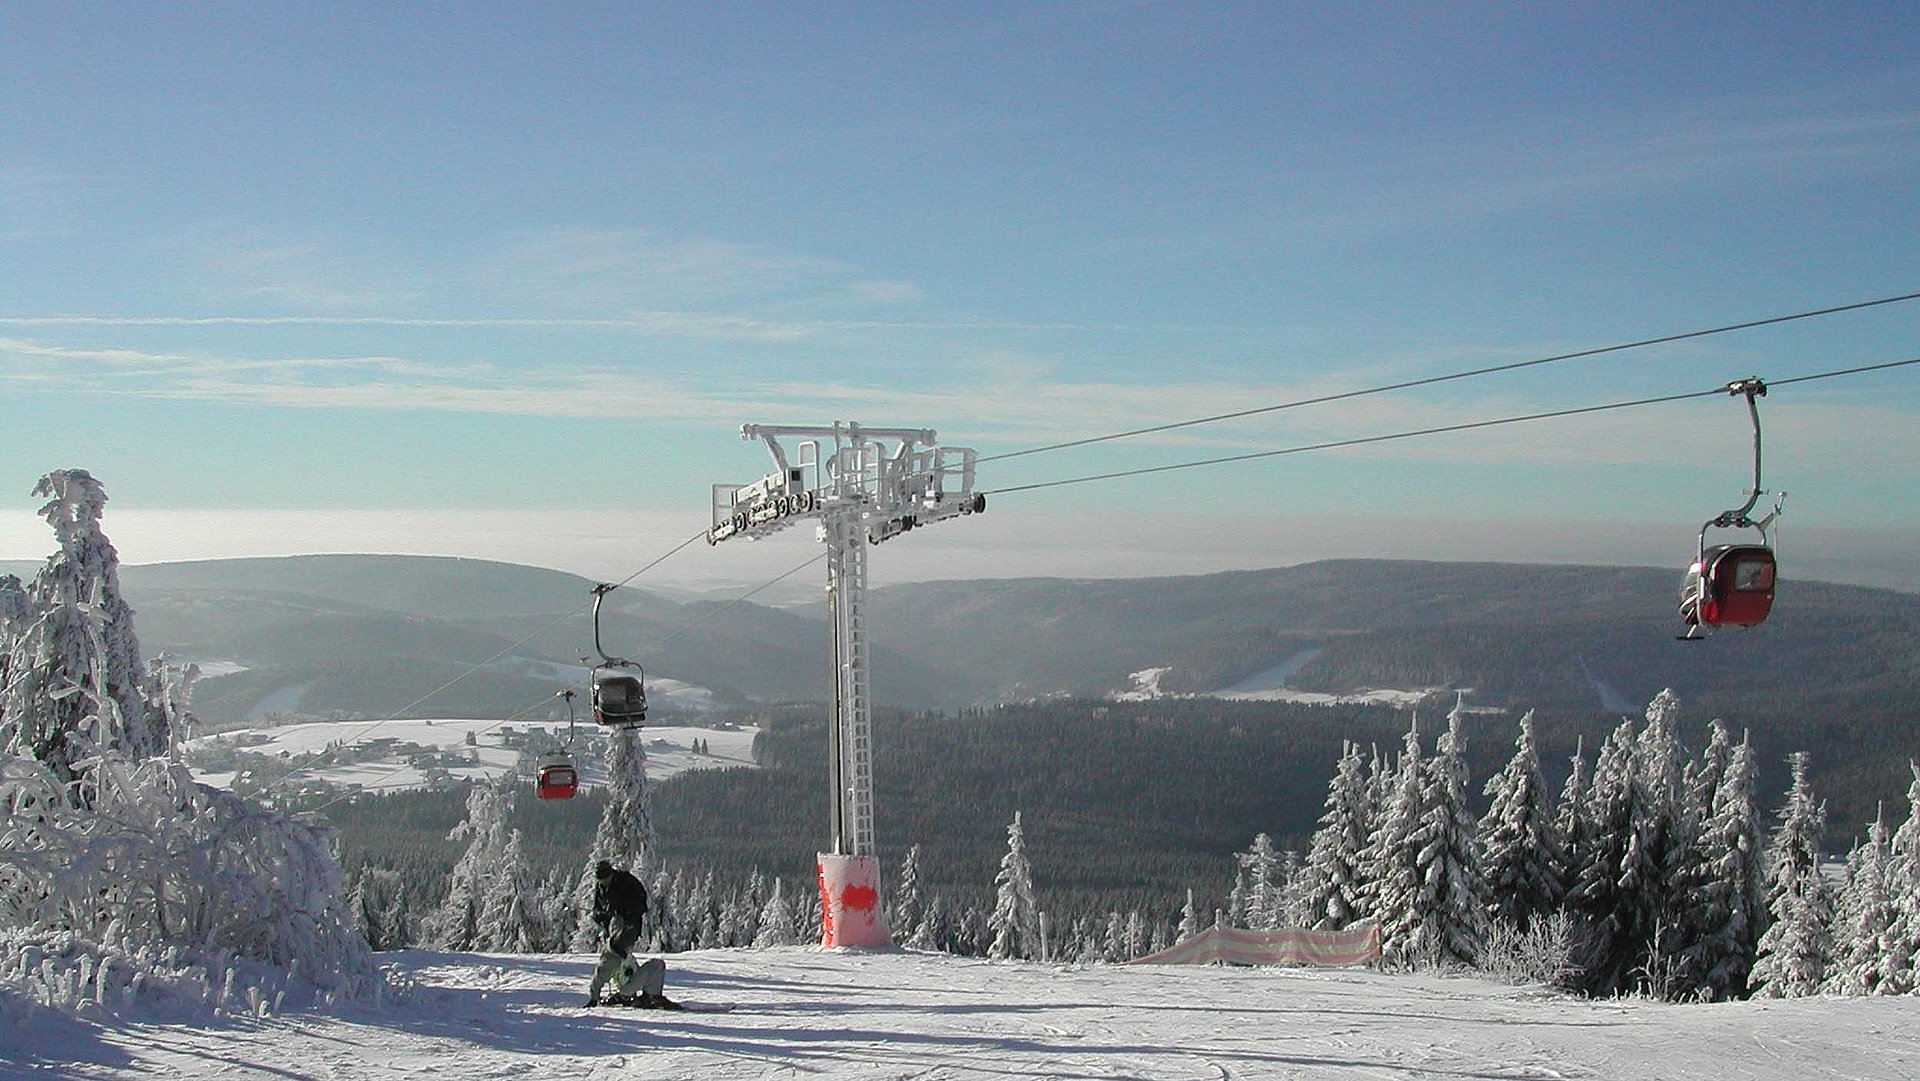 Wintersport-Unterkünfte im Fichtelgebirge - Wintersportfläche umgeben von Bäumen mit mittig gelegener Seilbahn, Bild mit Blick auf Hügel und Horizont unter blauem Himmel